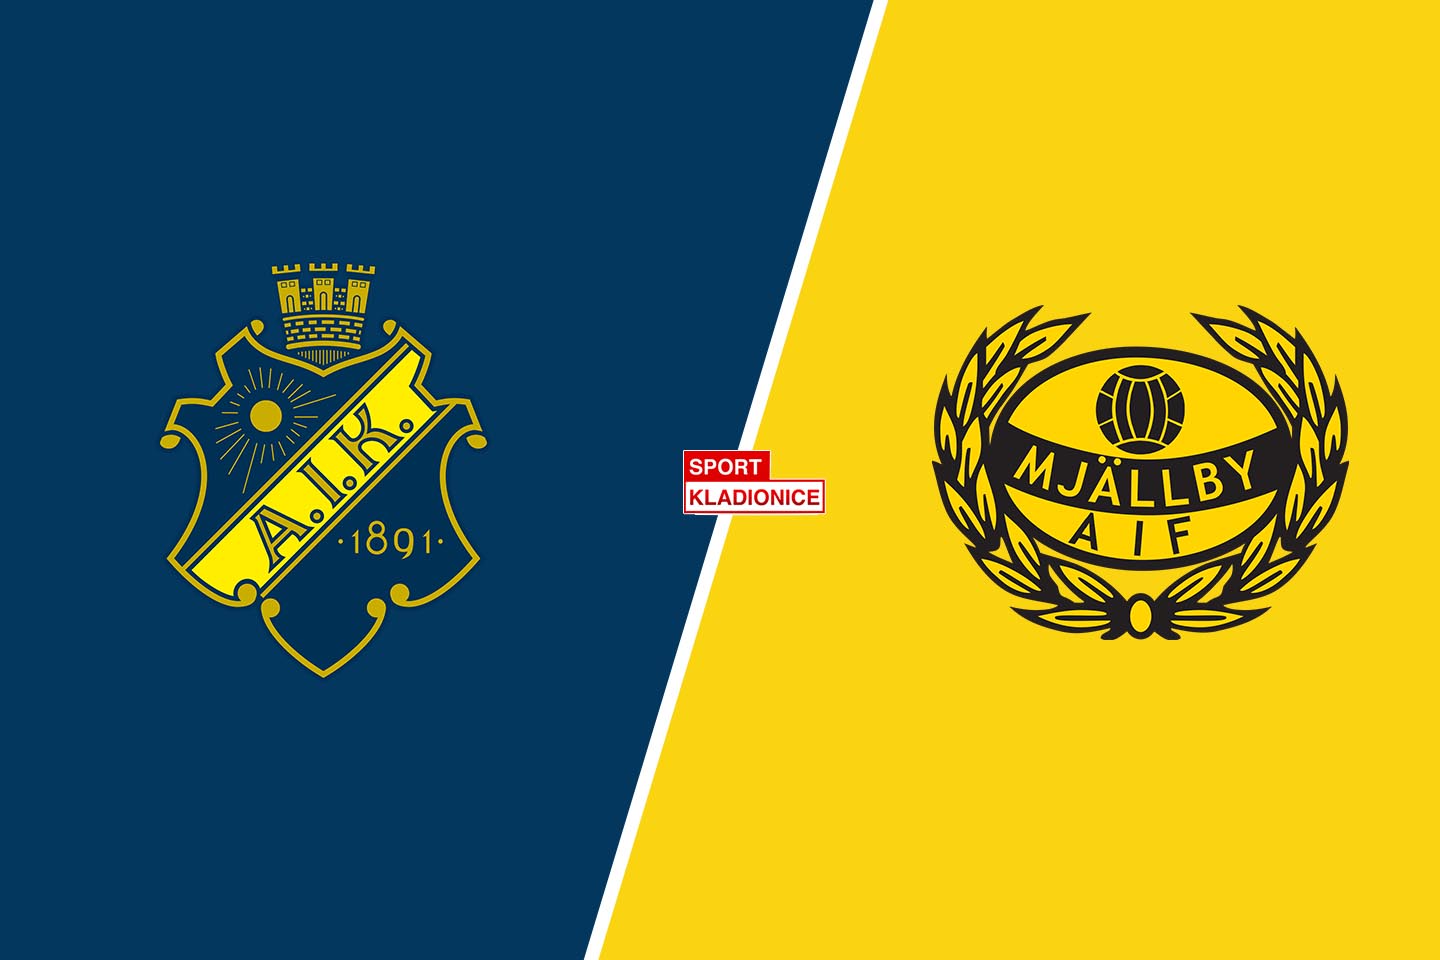 AIK vs. Mjallby